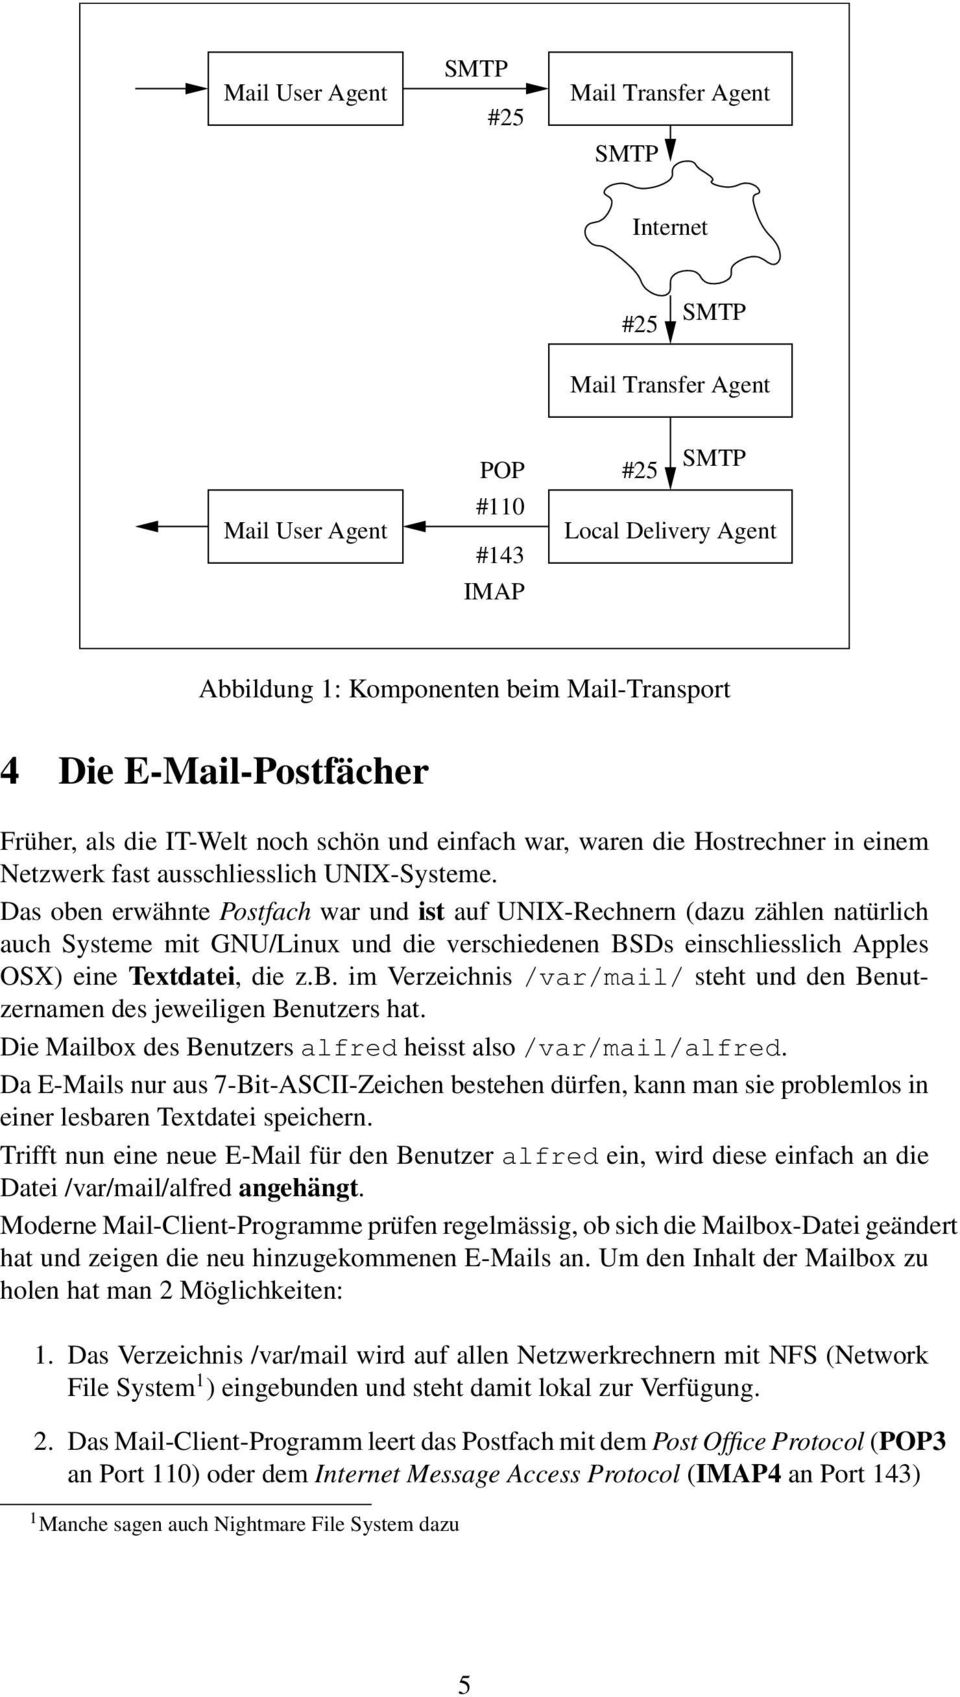 Das oben erwähnte Postfach war und ist auf UNIX-Rechnern (dazu zählen natürlich auch Systeme mit GNU/Linux und die verschiedenen BSDs einschliesslich Apples OSX) eine Textdatei, die z.b. im Verzeichnis /var/mail/ steht und den Benutzernamen des jeweiligen Benutzers hat.